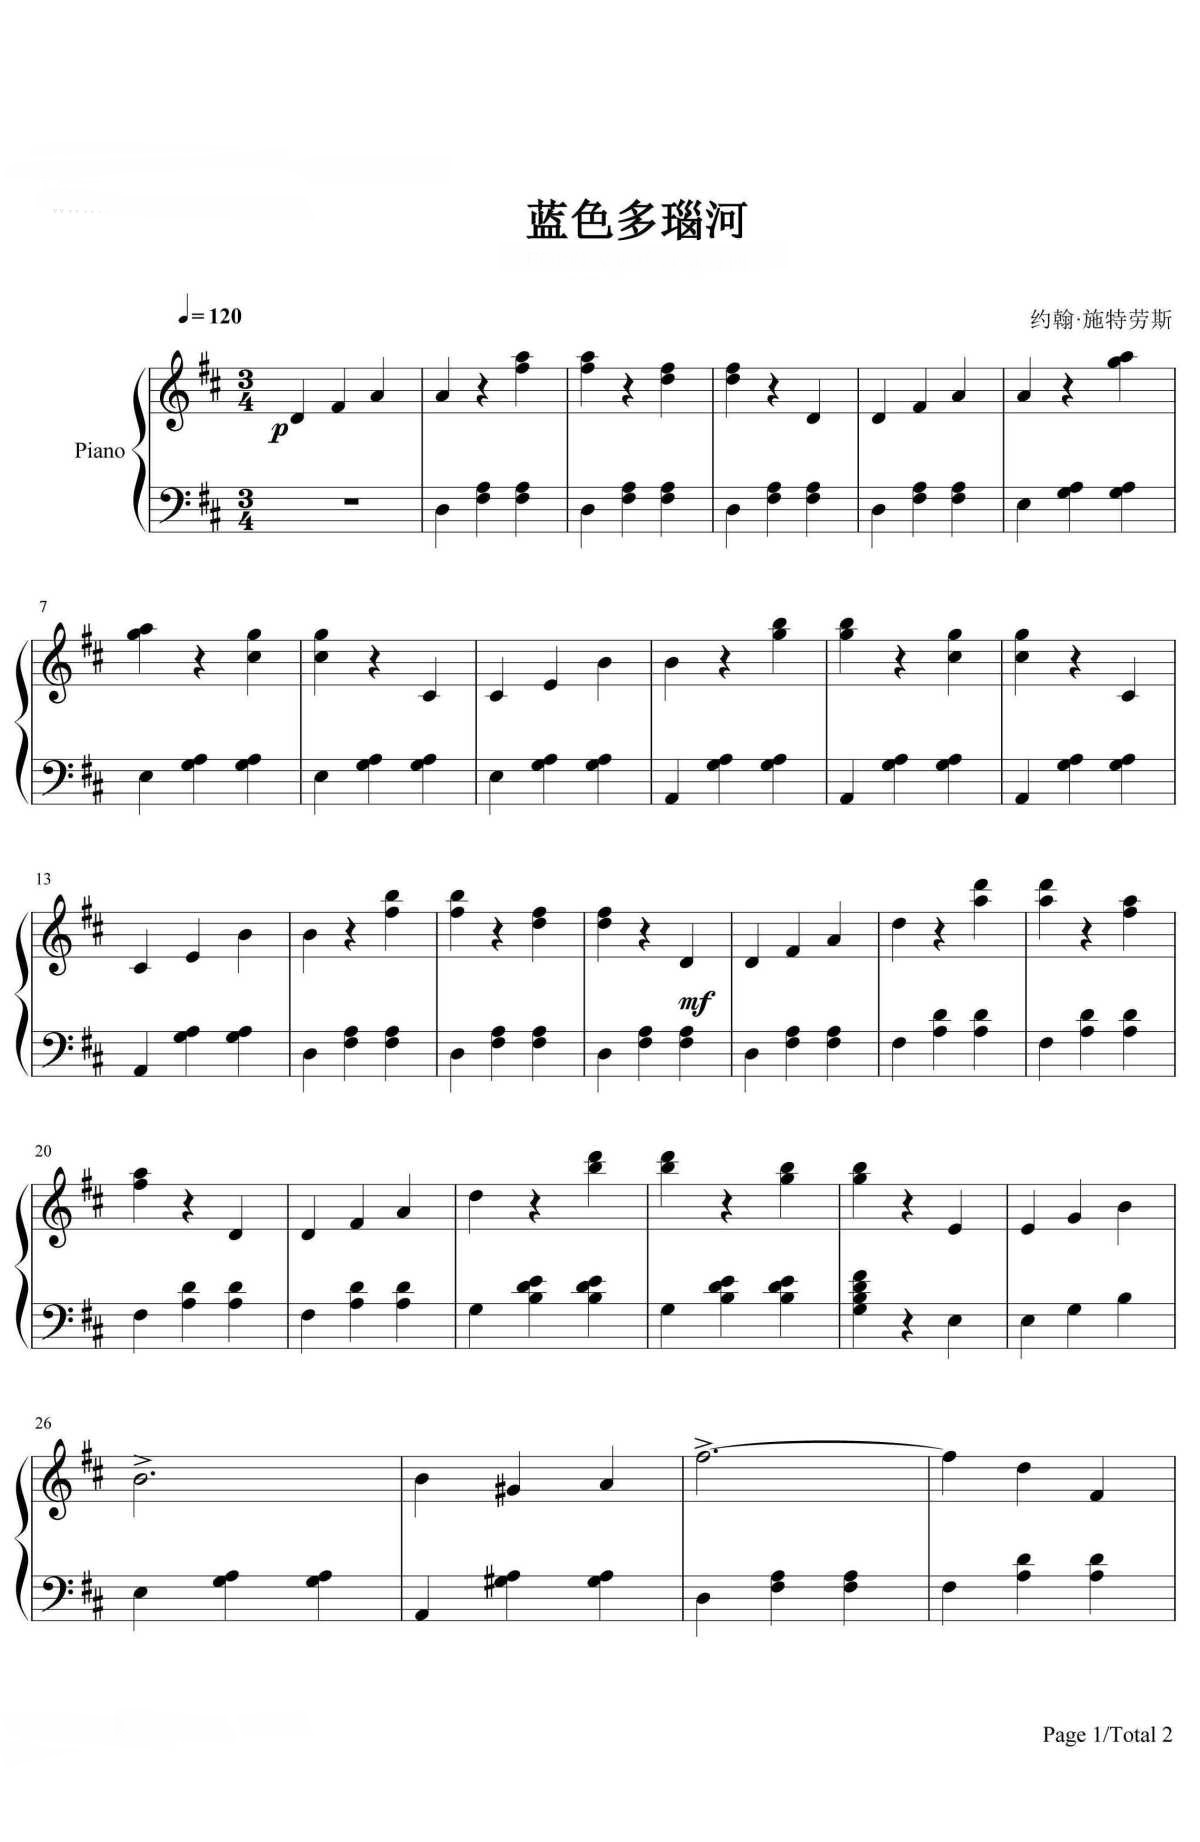 《蓝色多瑙河》的钢琴谱钢琴曲谱 - 小约翰·施特劳斯